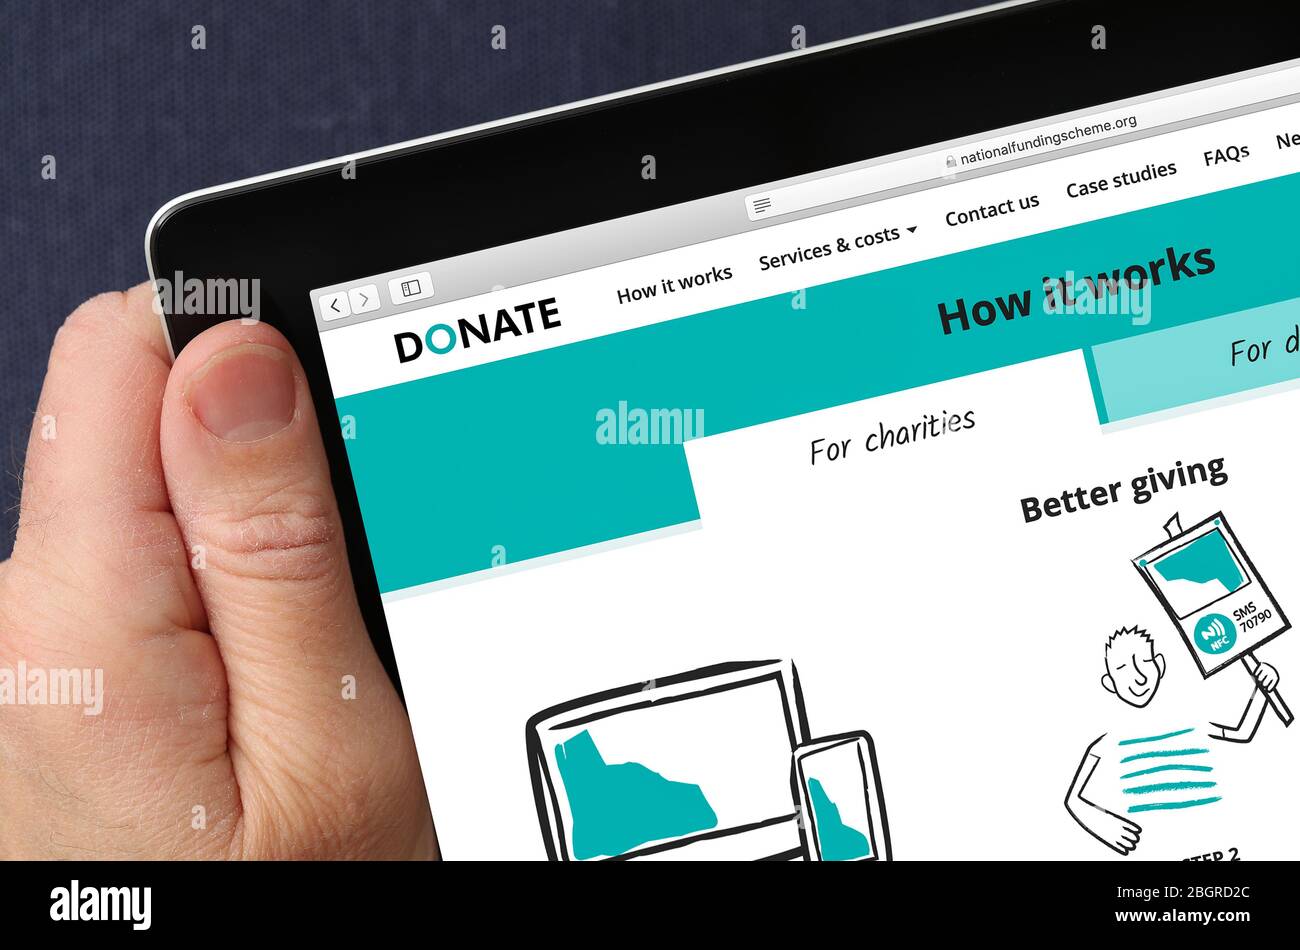 National Fundings Scheme, Spenden, Charity Fundraising Website auf einem iPad angesehen Stockfoto